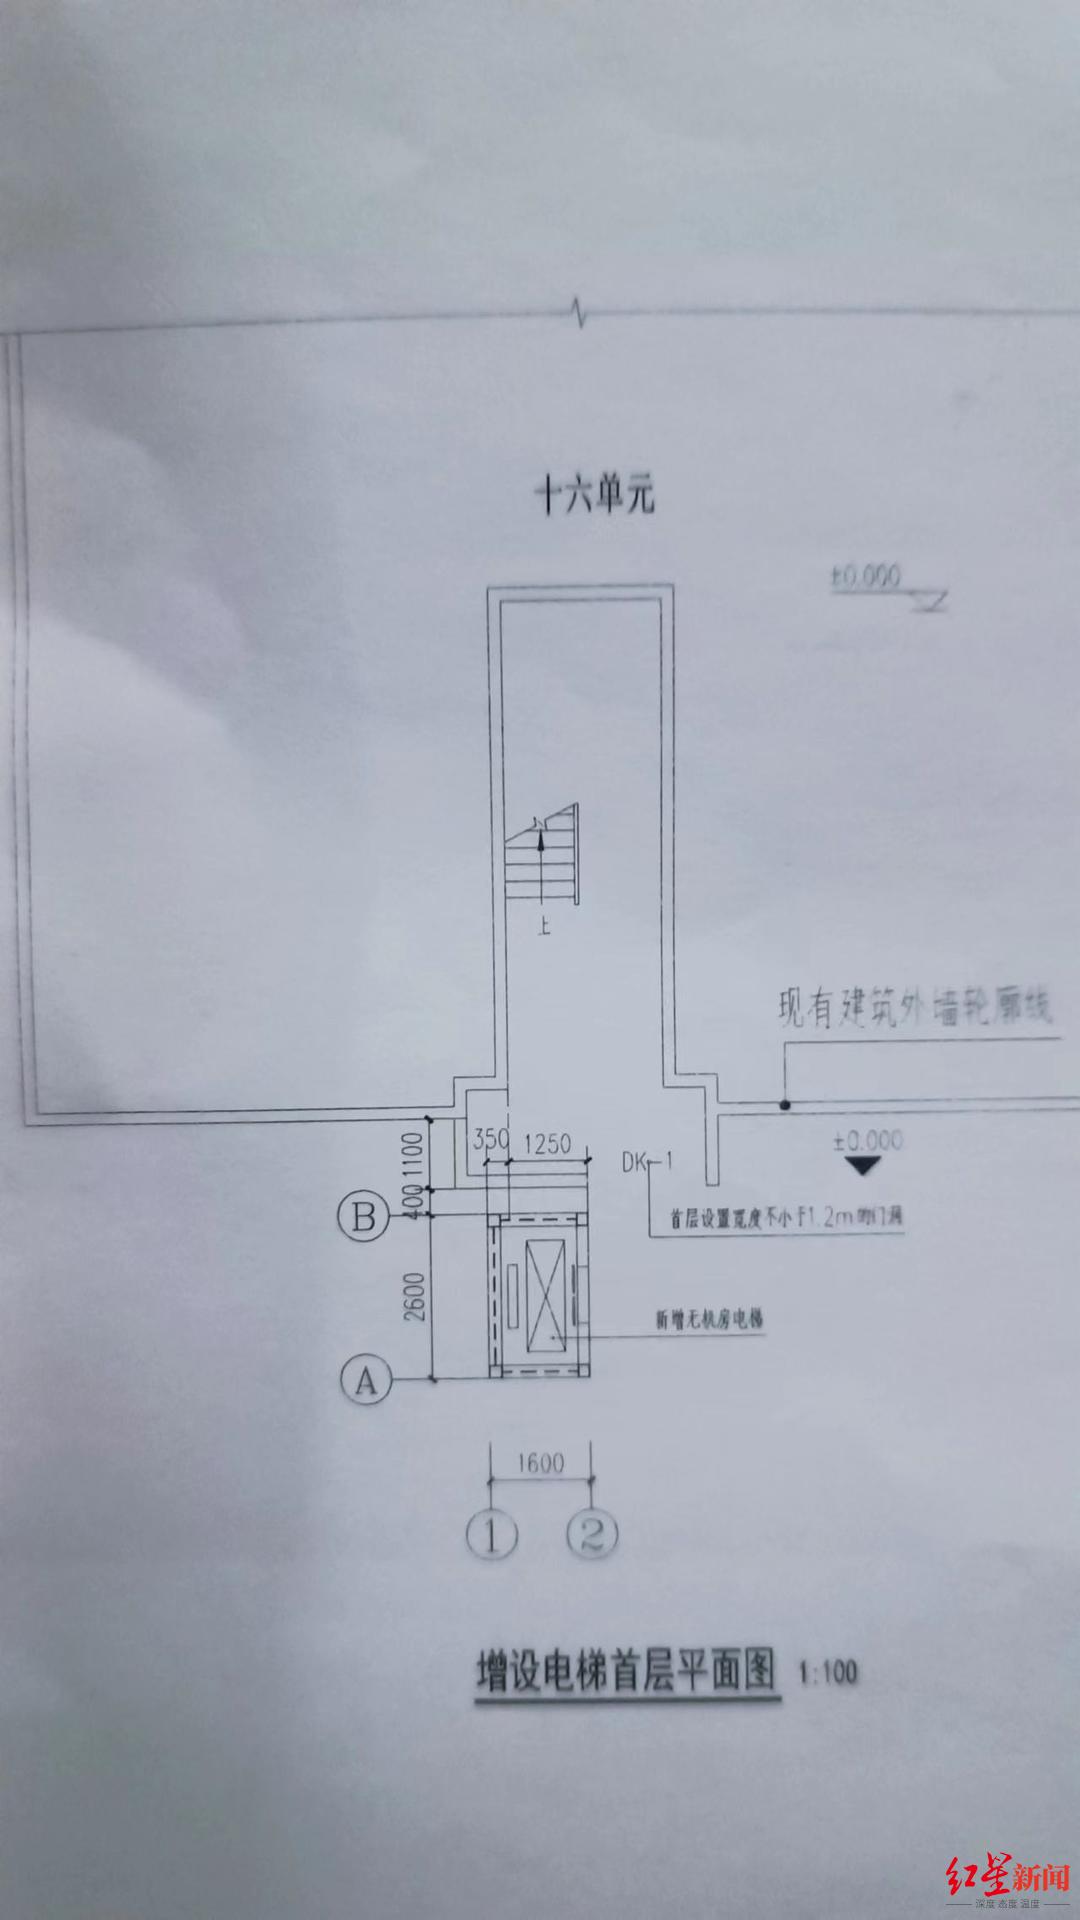 ↑电梯设计图